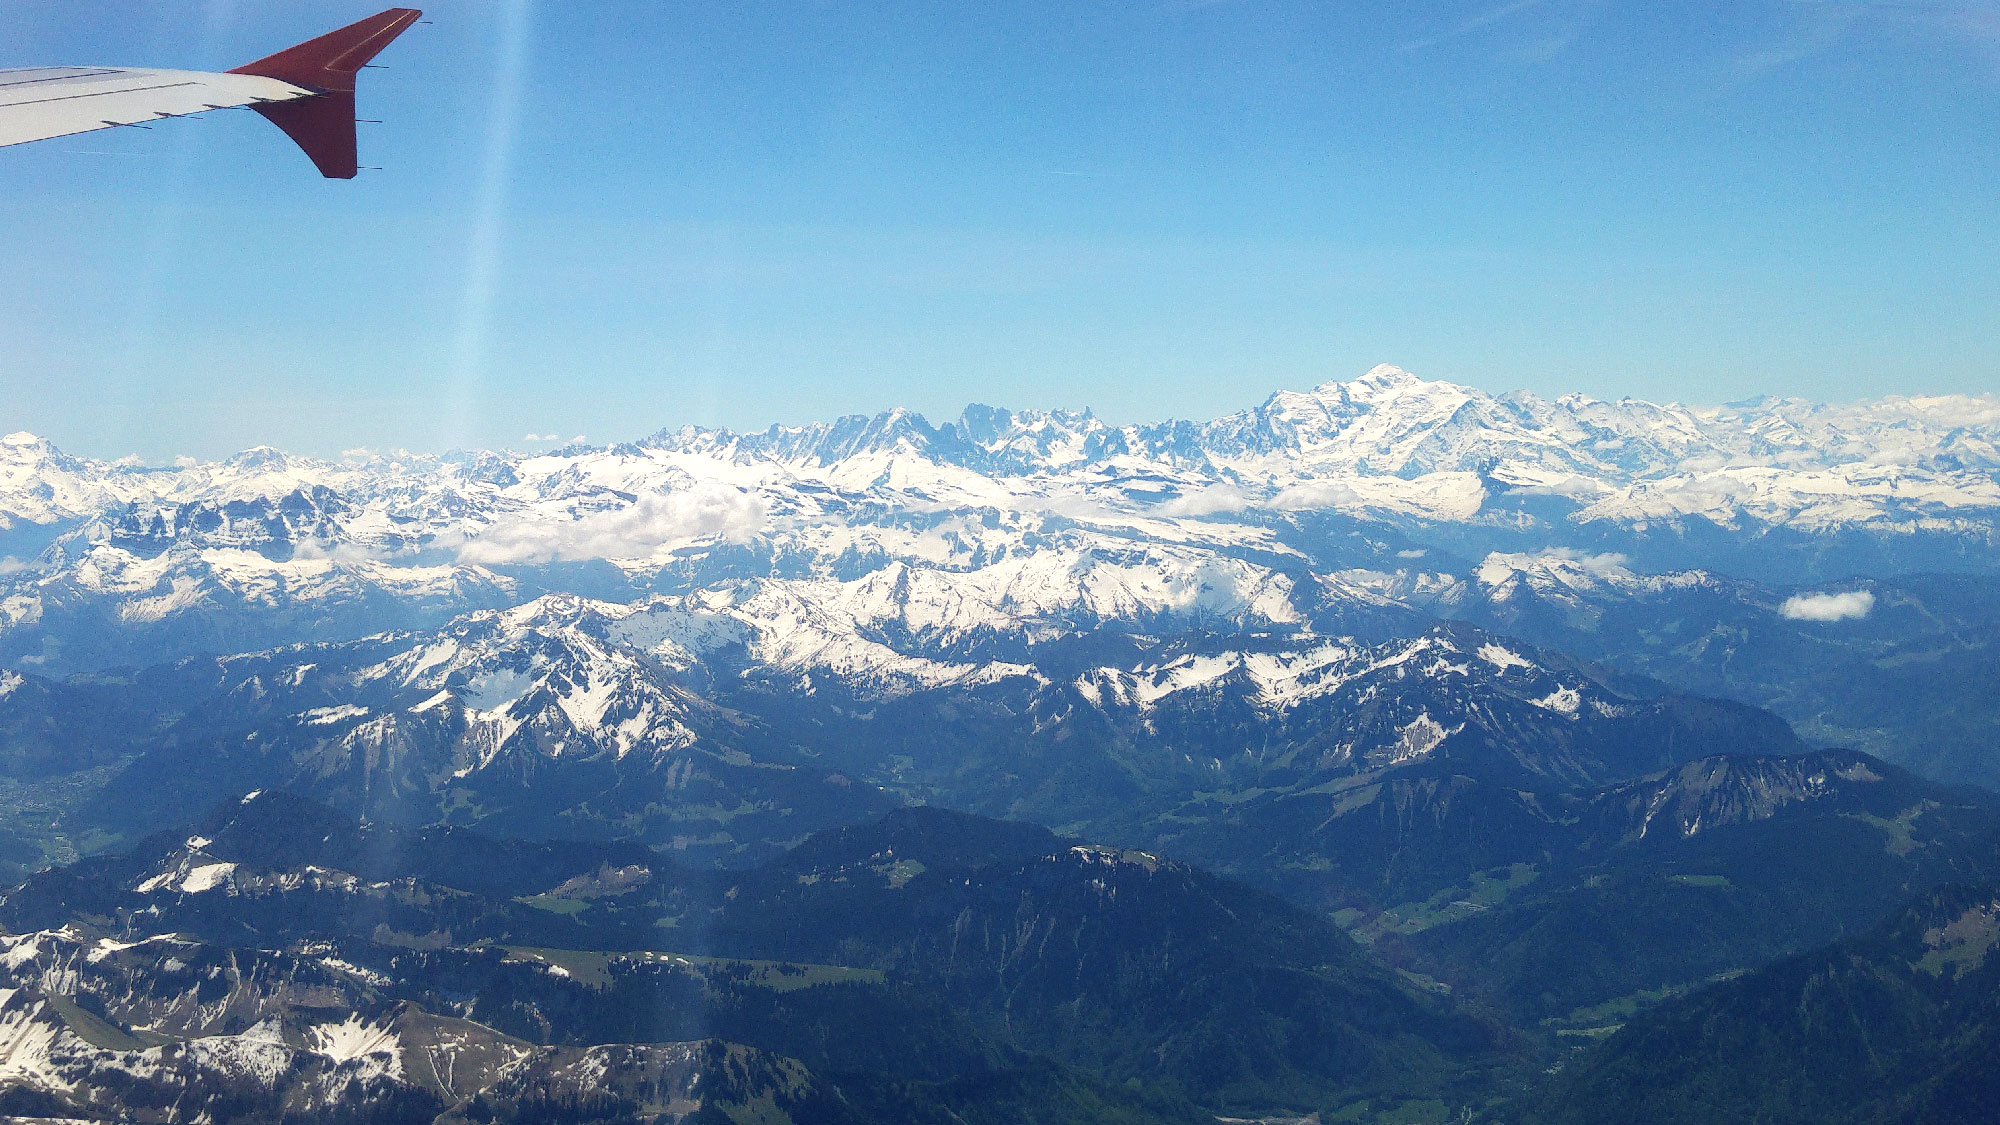 Vue du Mont Blanc depuis notre avion - Juste Ici - Le blog de voyage de Claire et Vincent